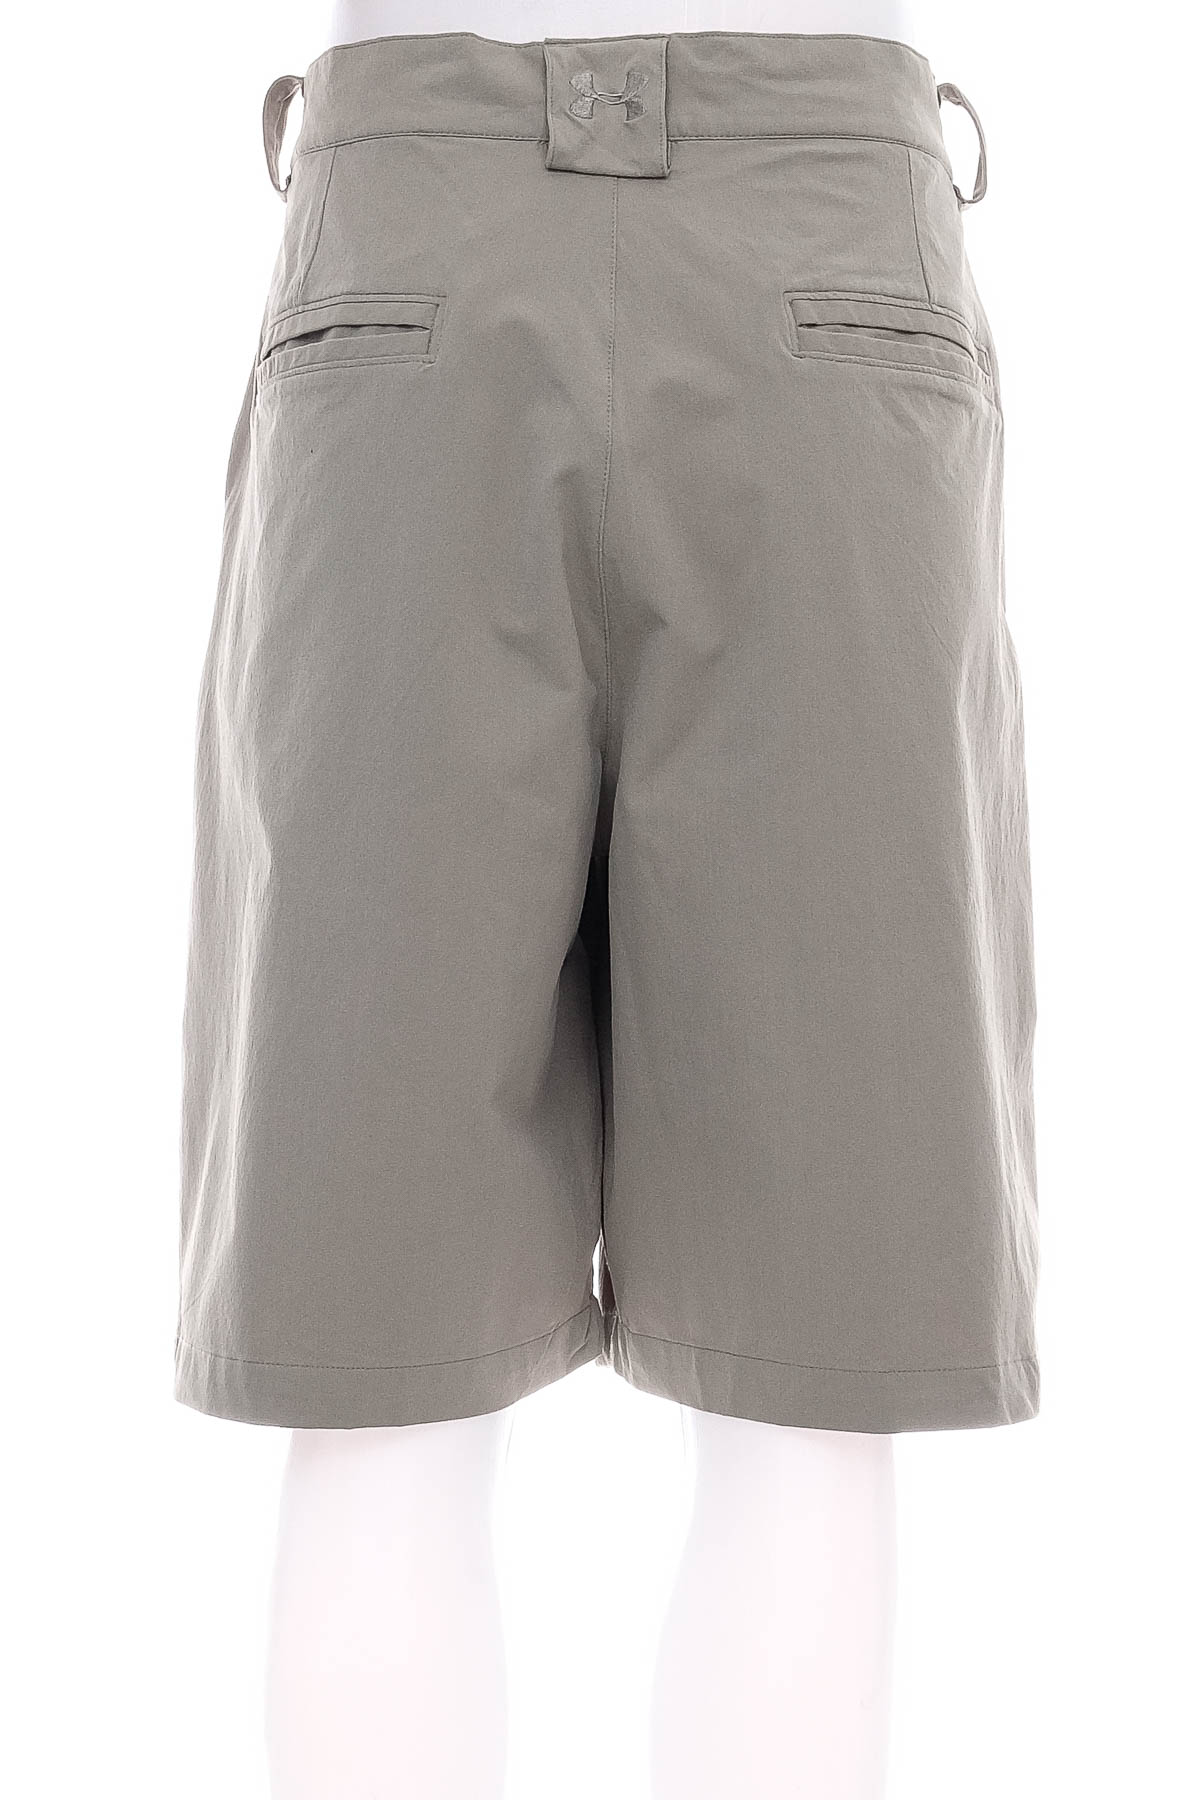 Pantaloni scurți bărbați - UNDER ARMOUR - 1